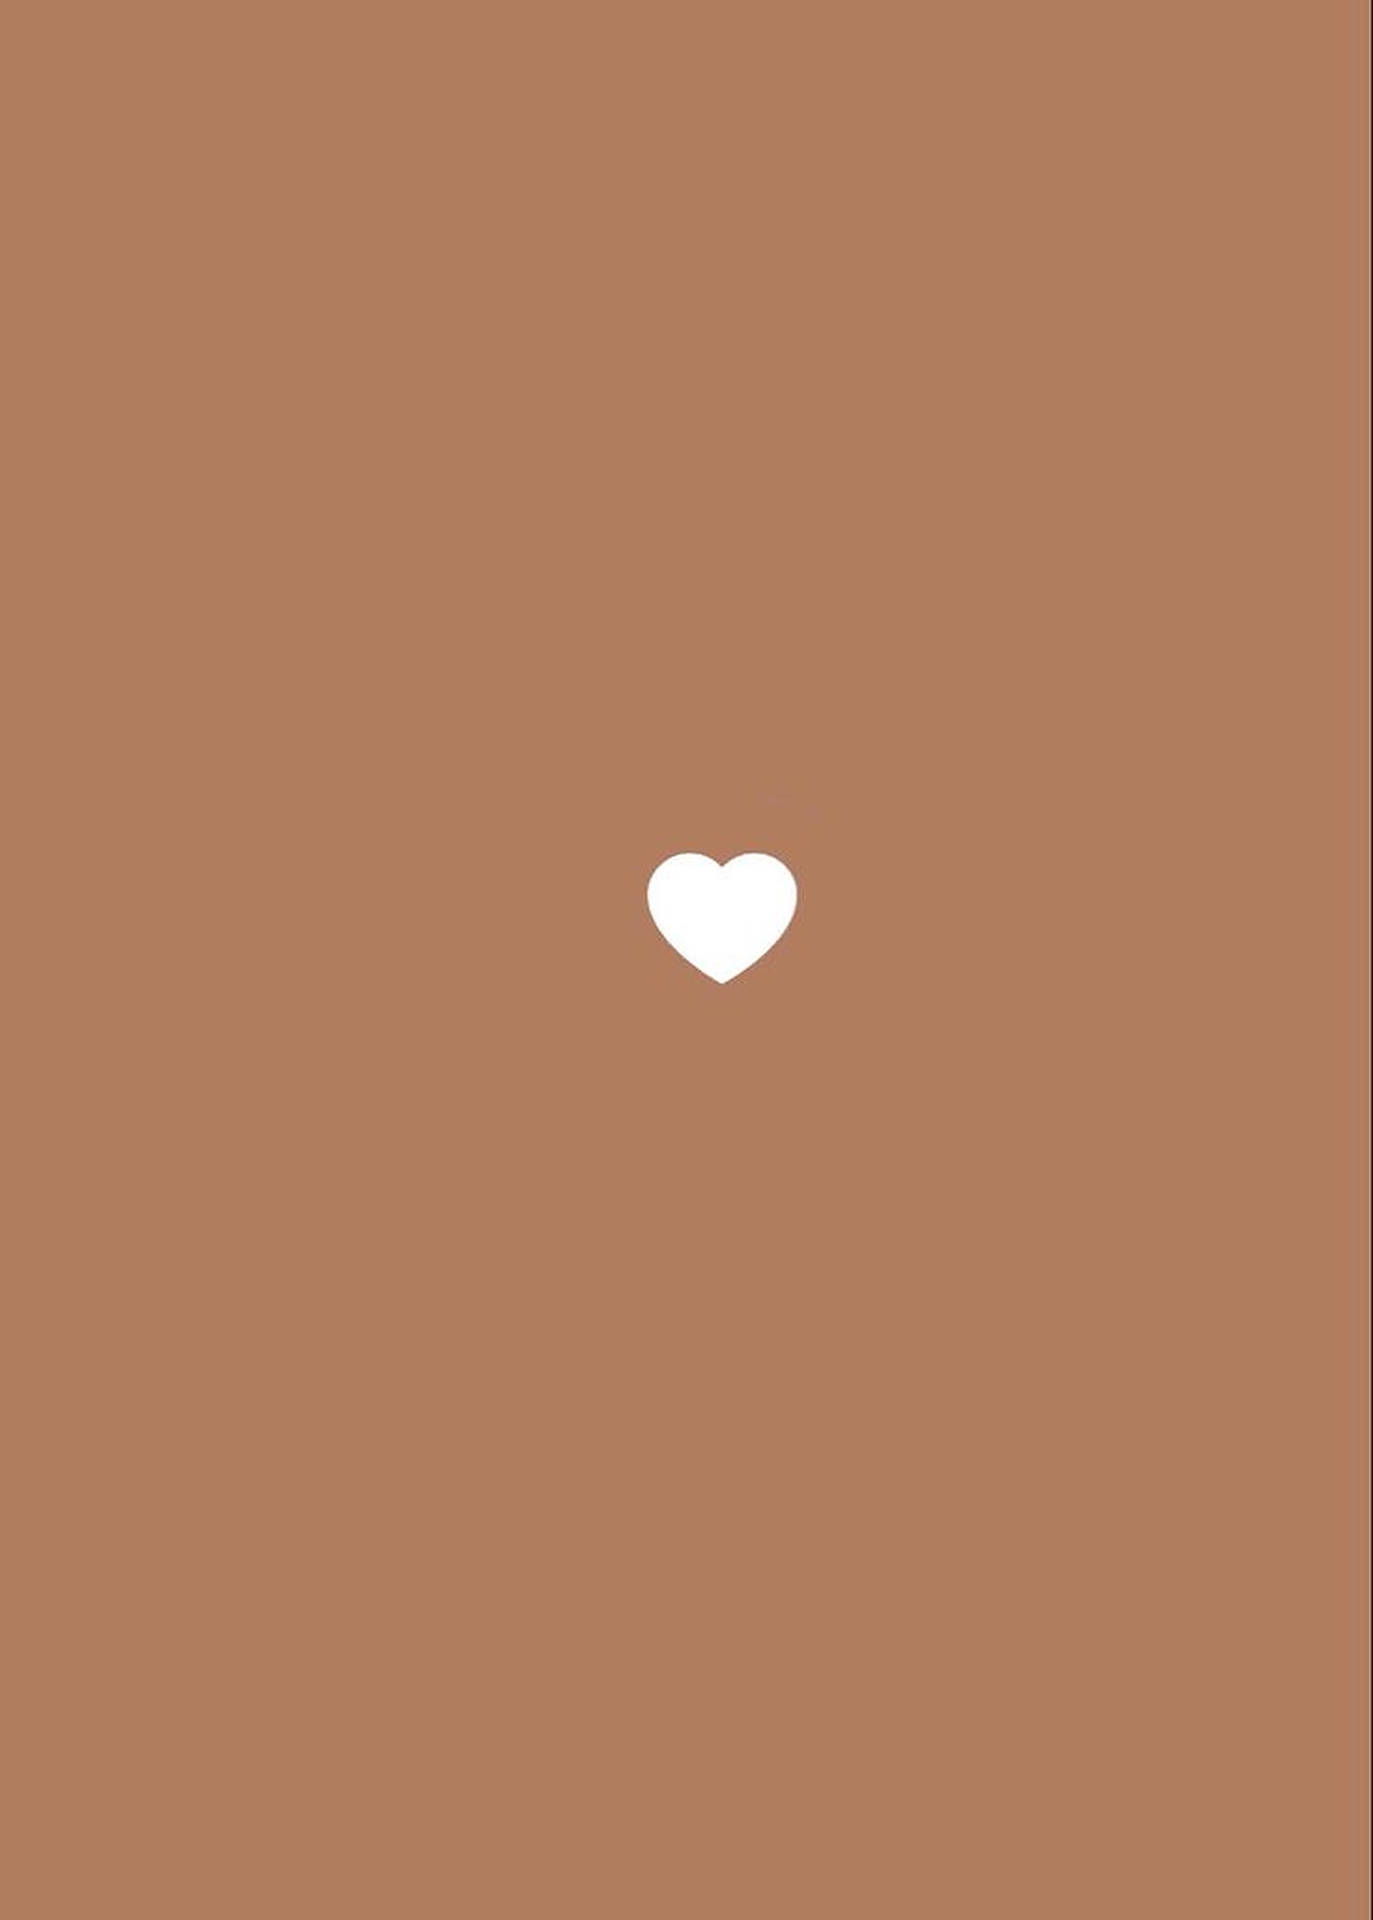 White Heart On Brown Wallpaper